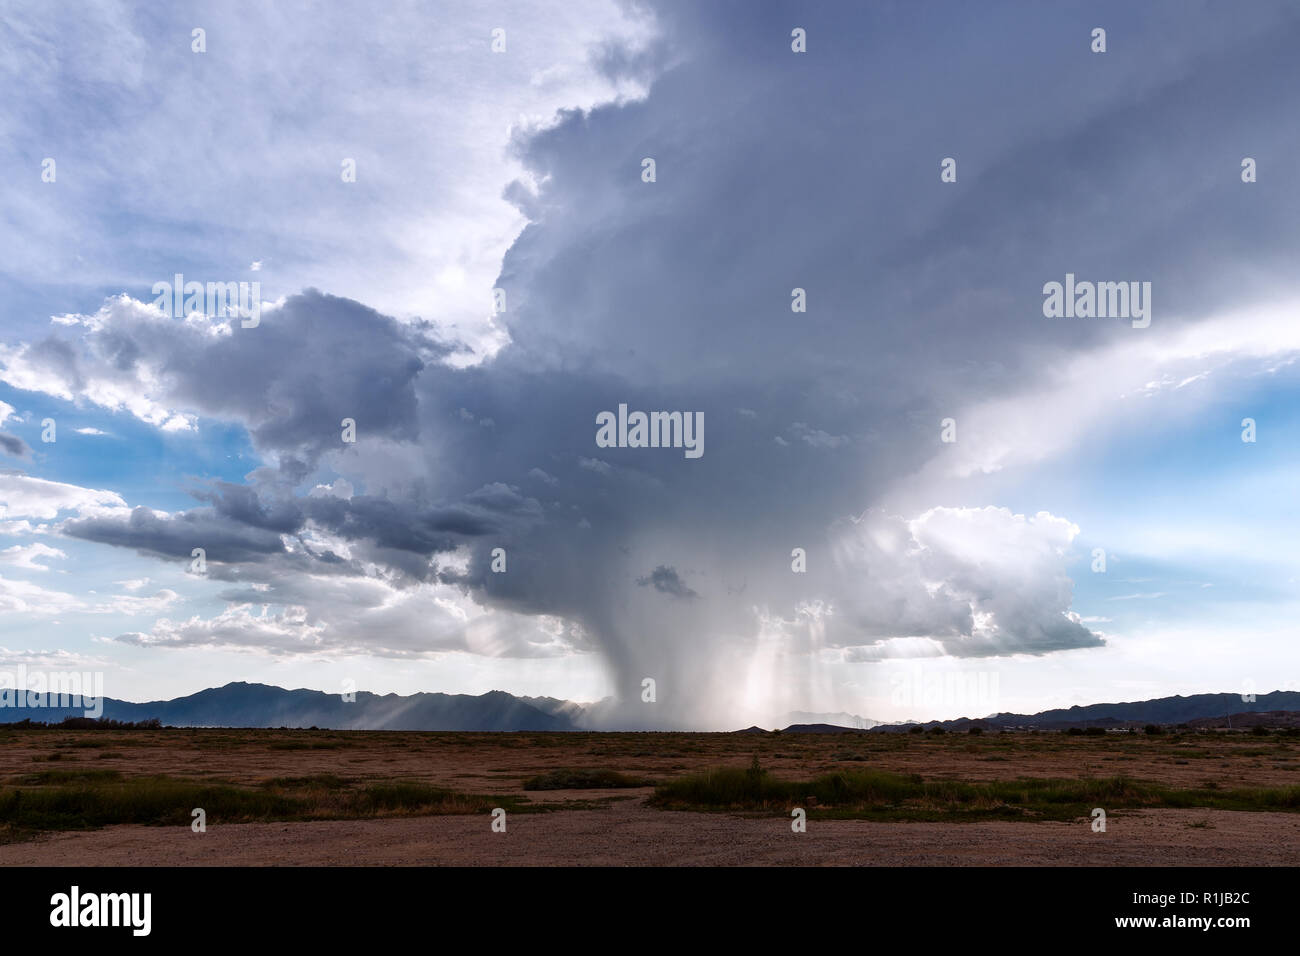 Regen, der von einer Monsun-Gewitter-Cumulonimbus-Wolke in Arizona fällt Stockfoto